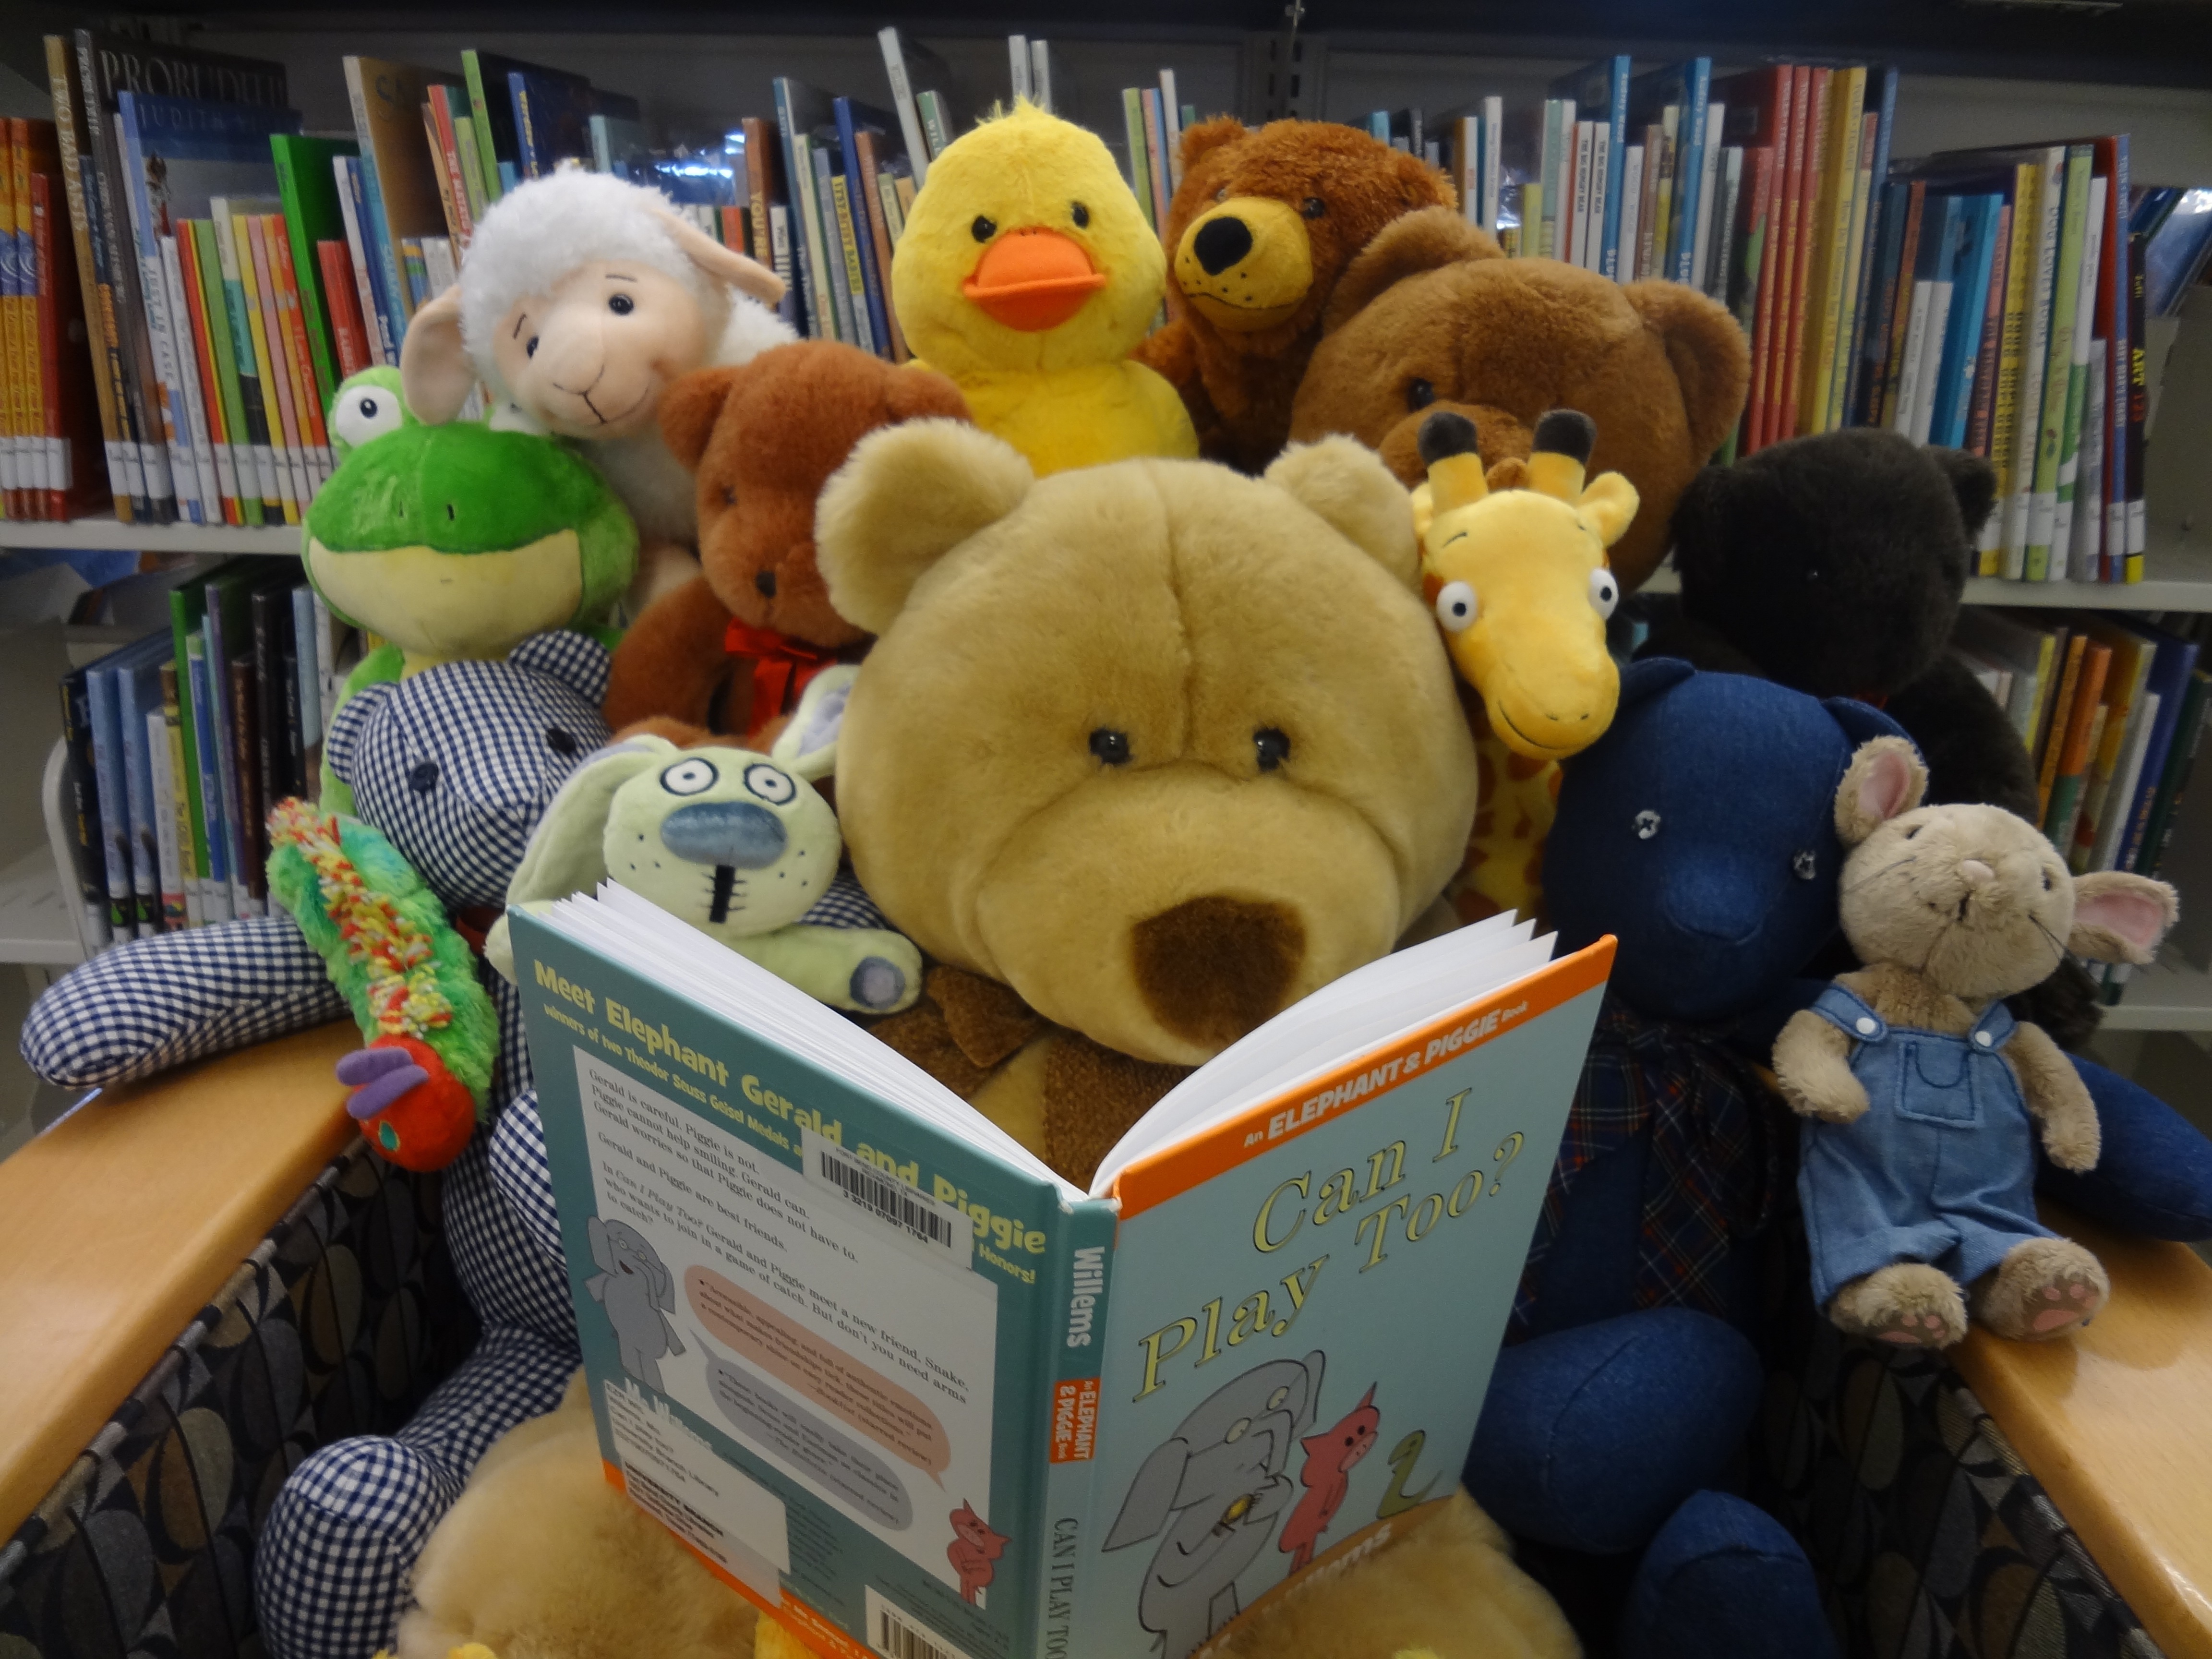 Teddy Bears reading a book